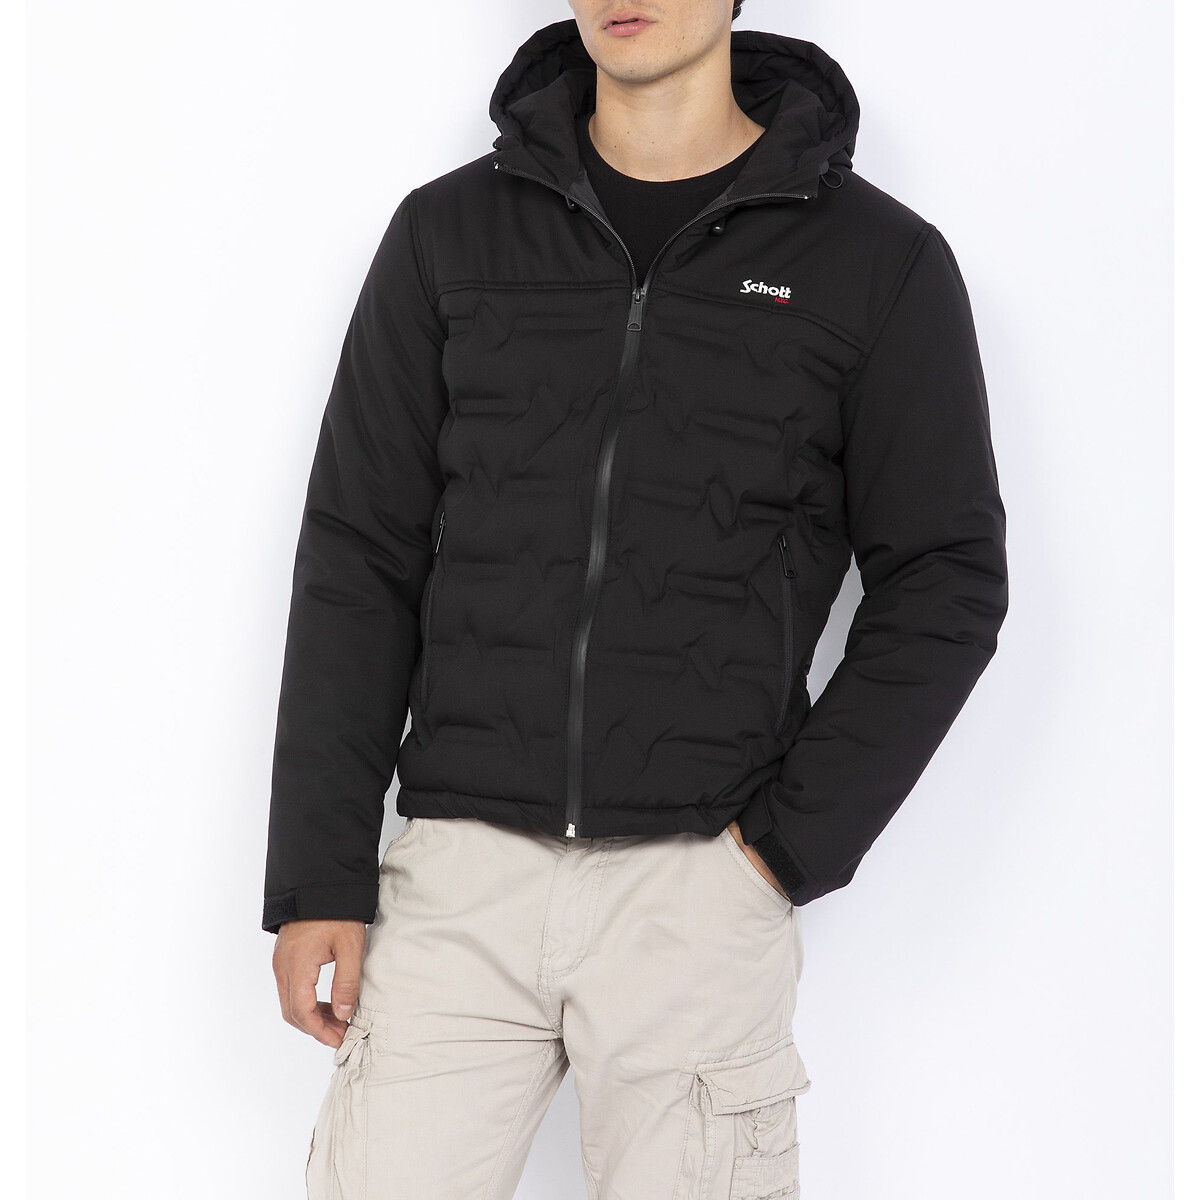 Куртка стеганая короткая с капюшоном зимняя XL черный куртка стеганая короткая с капюшоном m черный